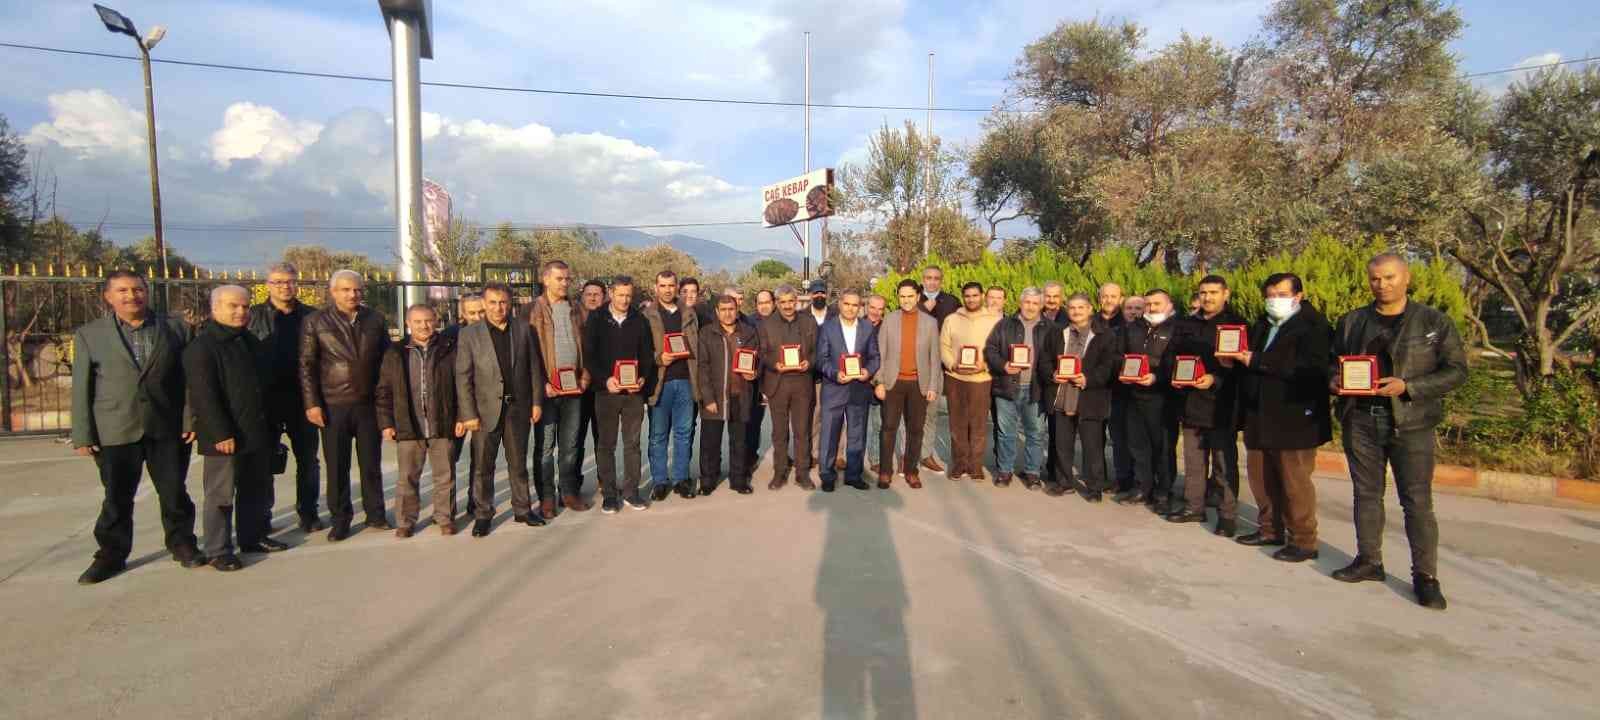 Türkiye gazetesi Çalışan Gazeteciler Günü’nü kutladı #izmir